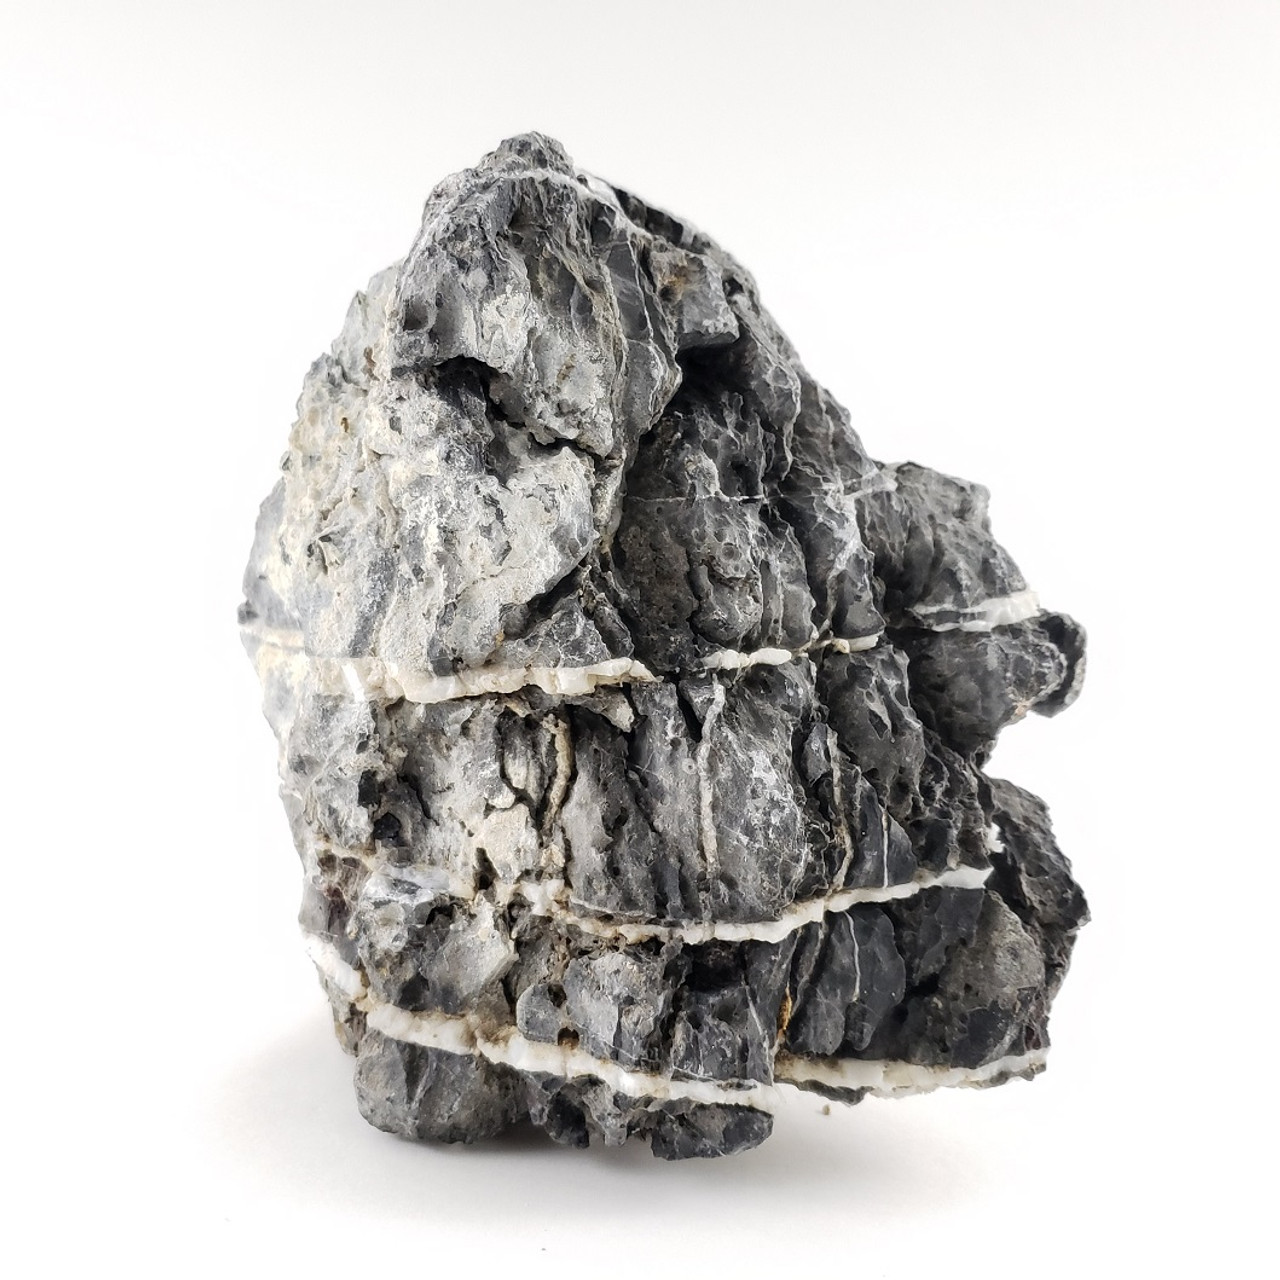 Lifegard Seiryu Smoky Mountain Stone - 15 Lbs Mix Size Kit of Medium and Small Rocks